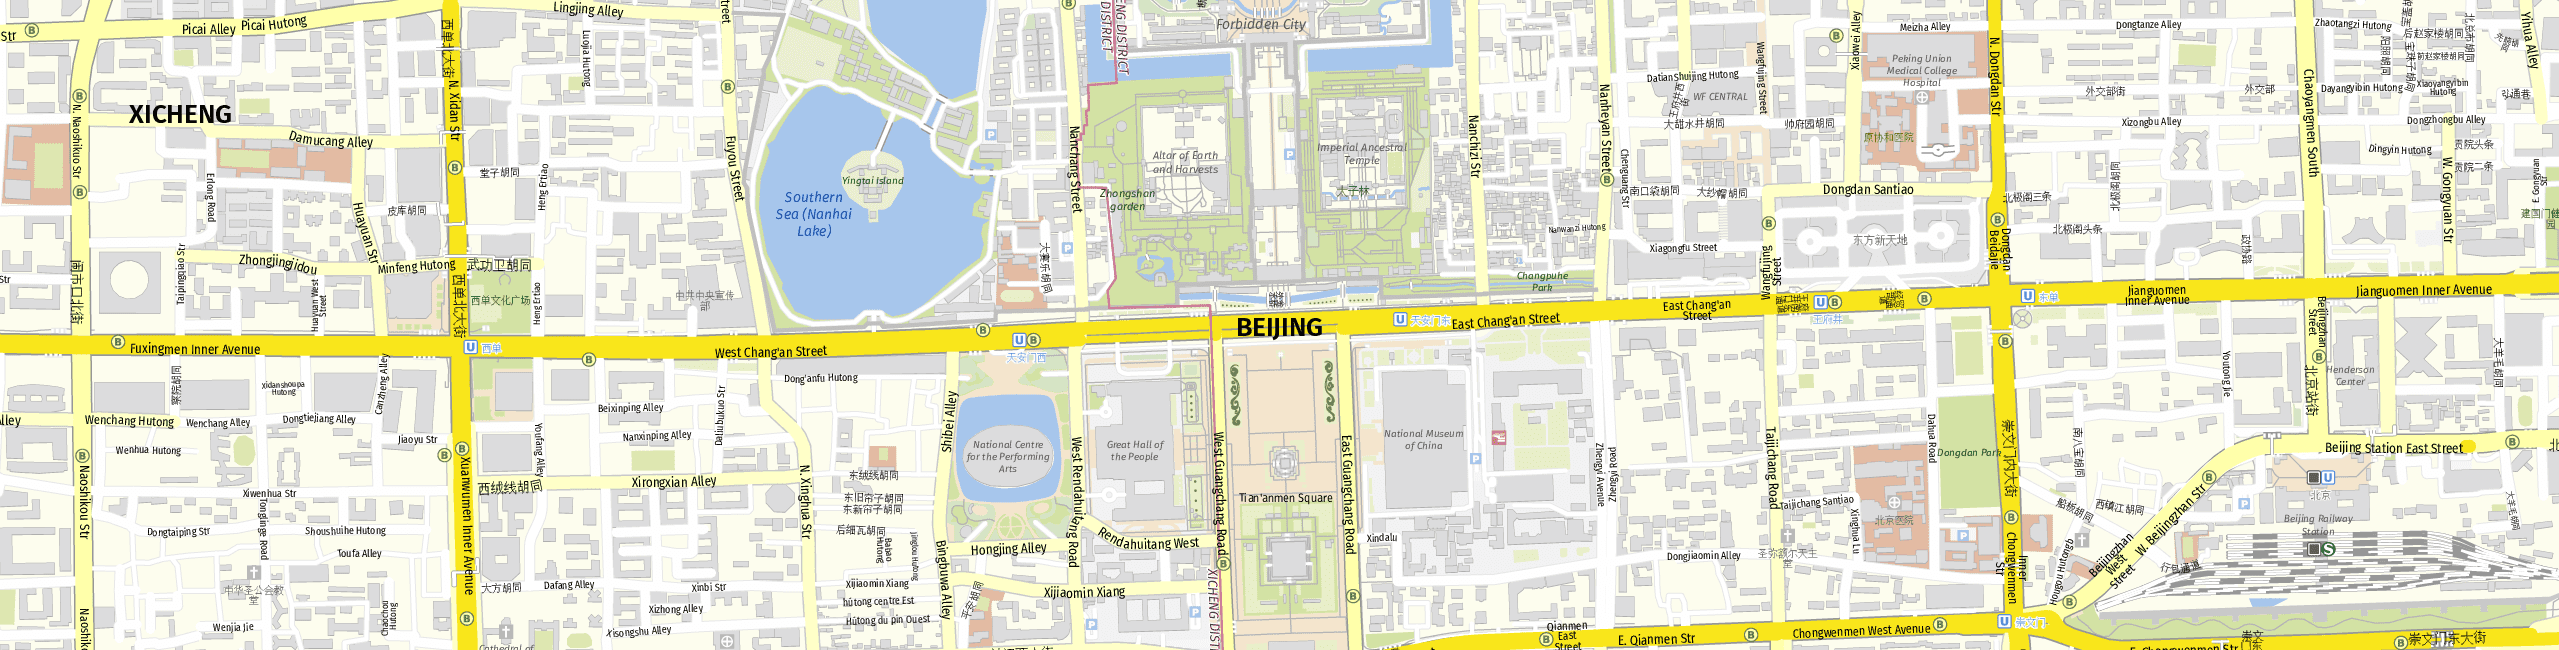 Stadtplan Peking zum Downloaden.